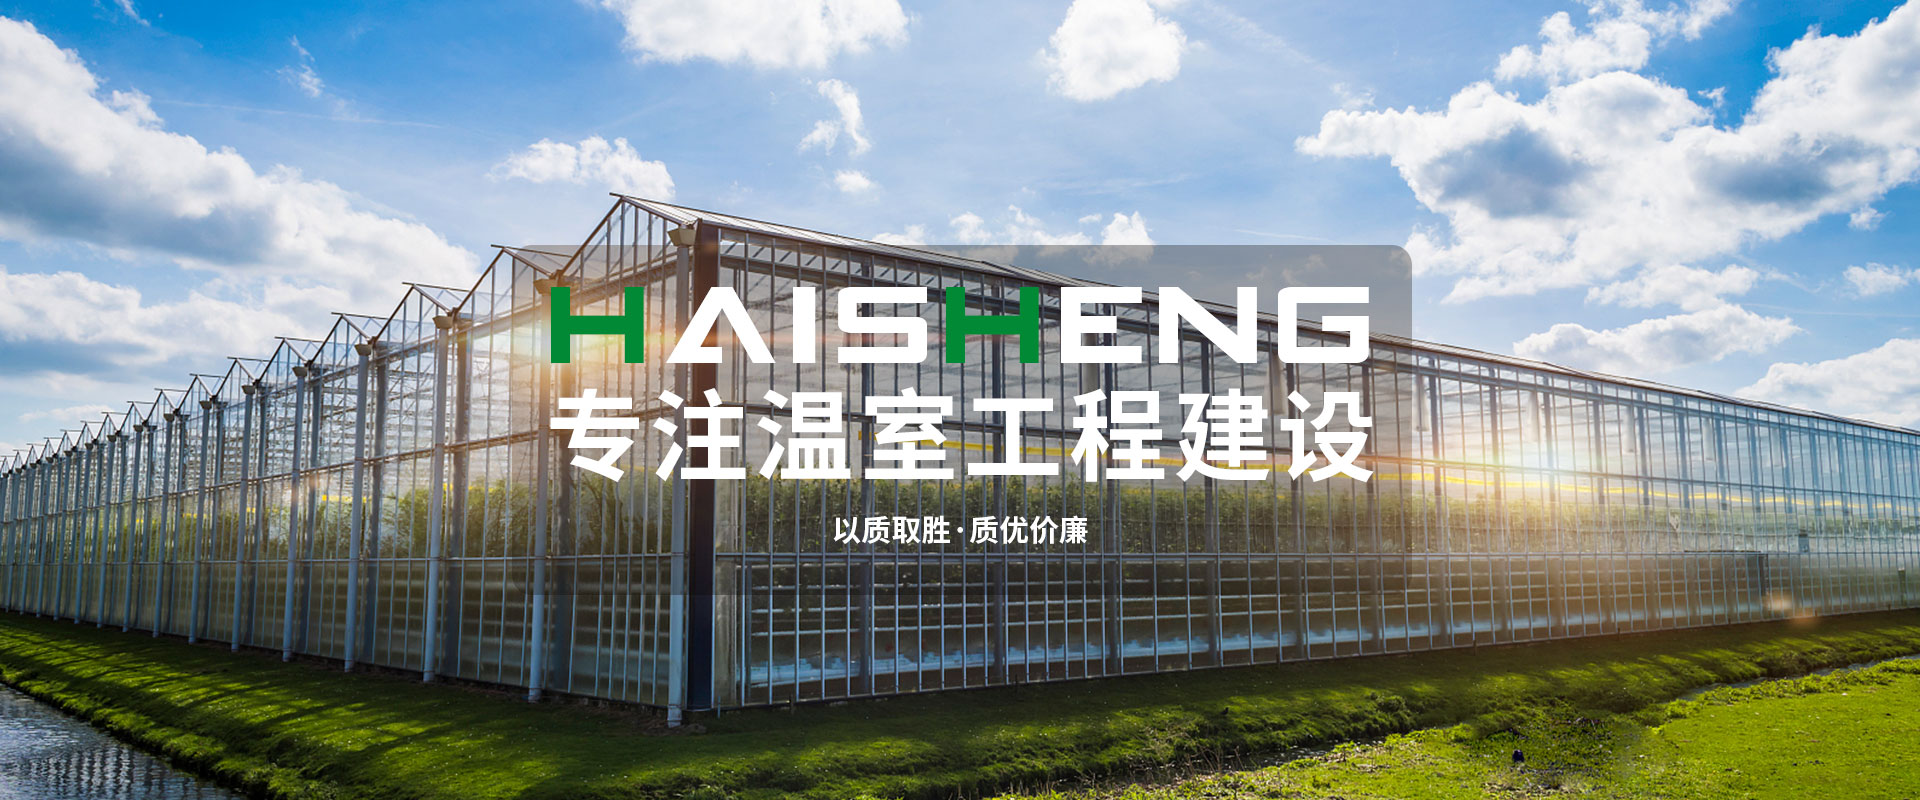 青州海盛溫室工程有限公司